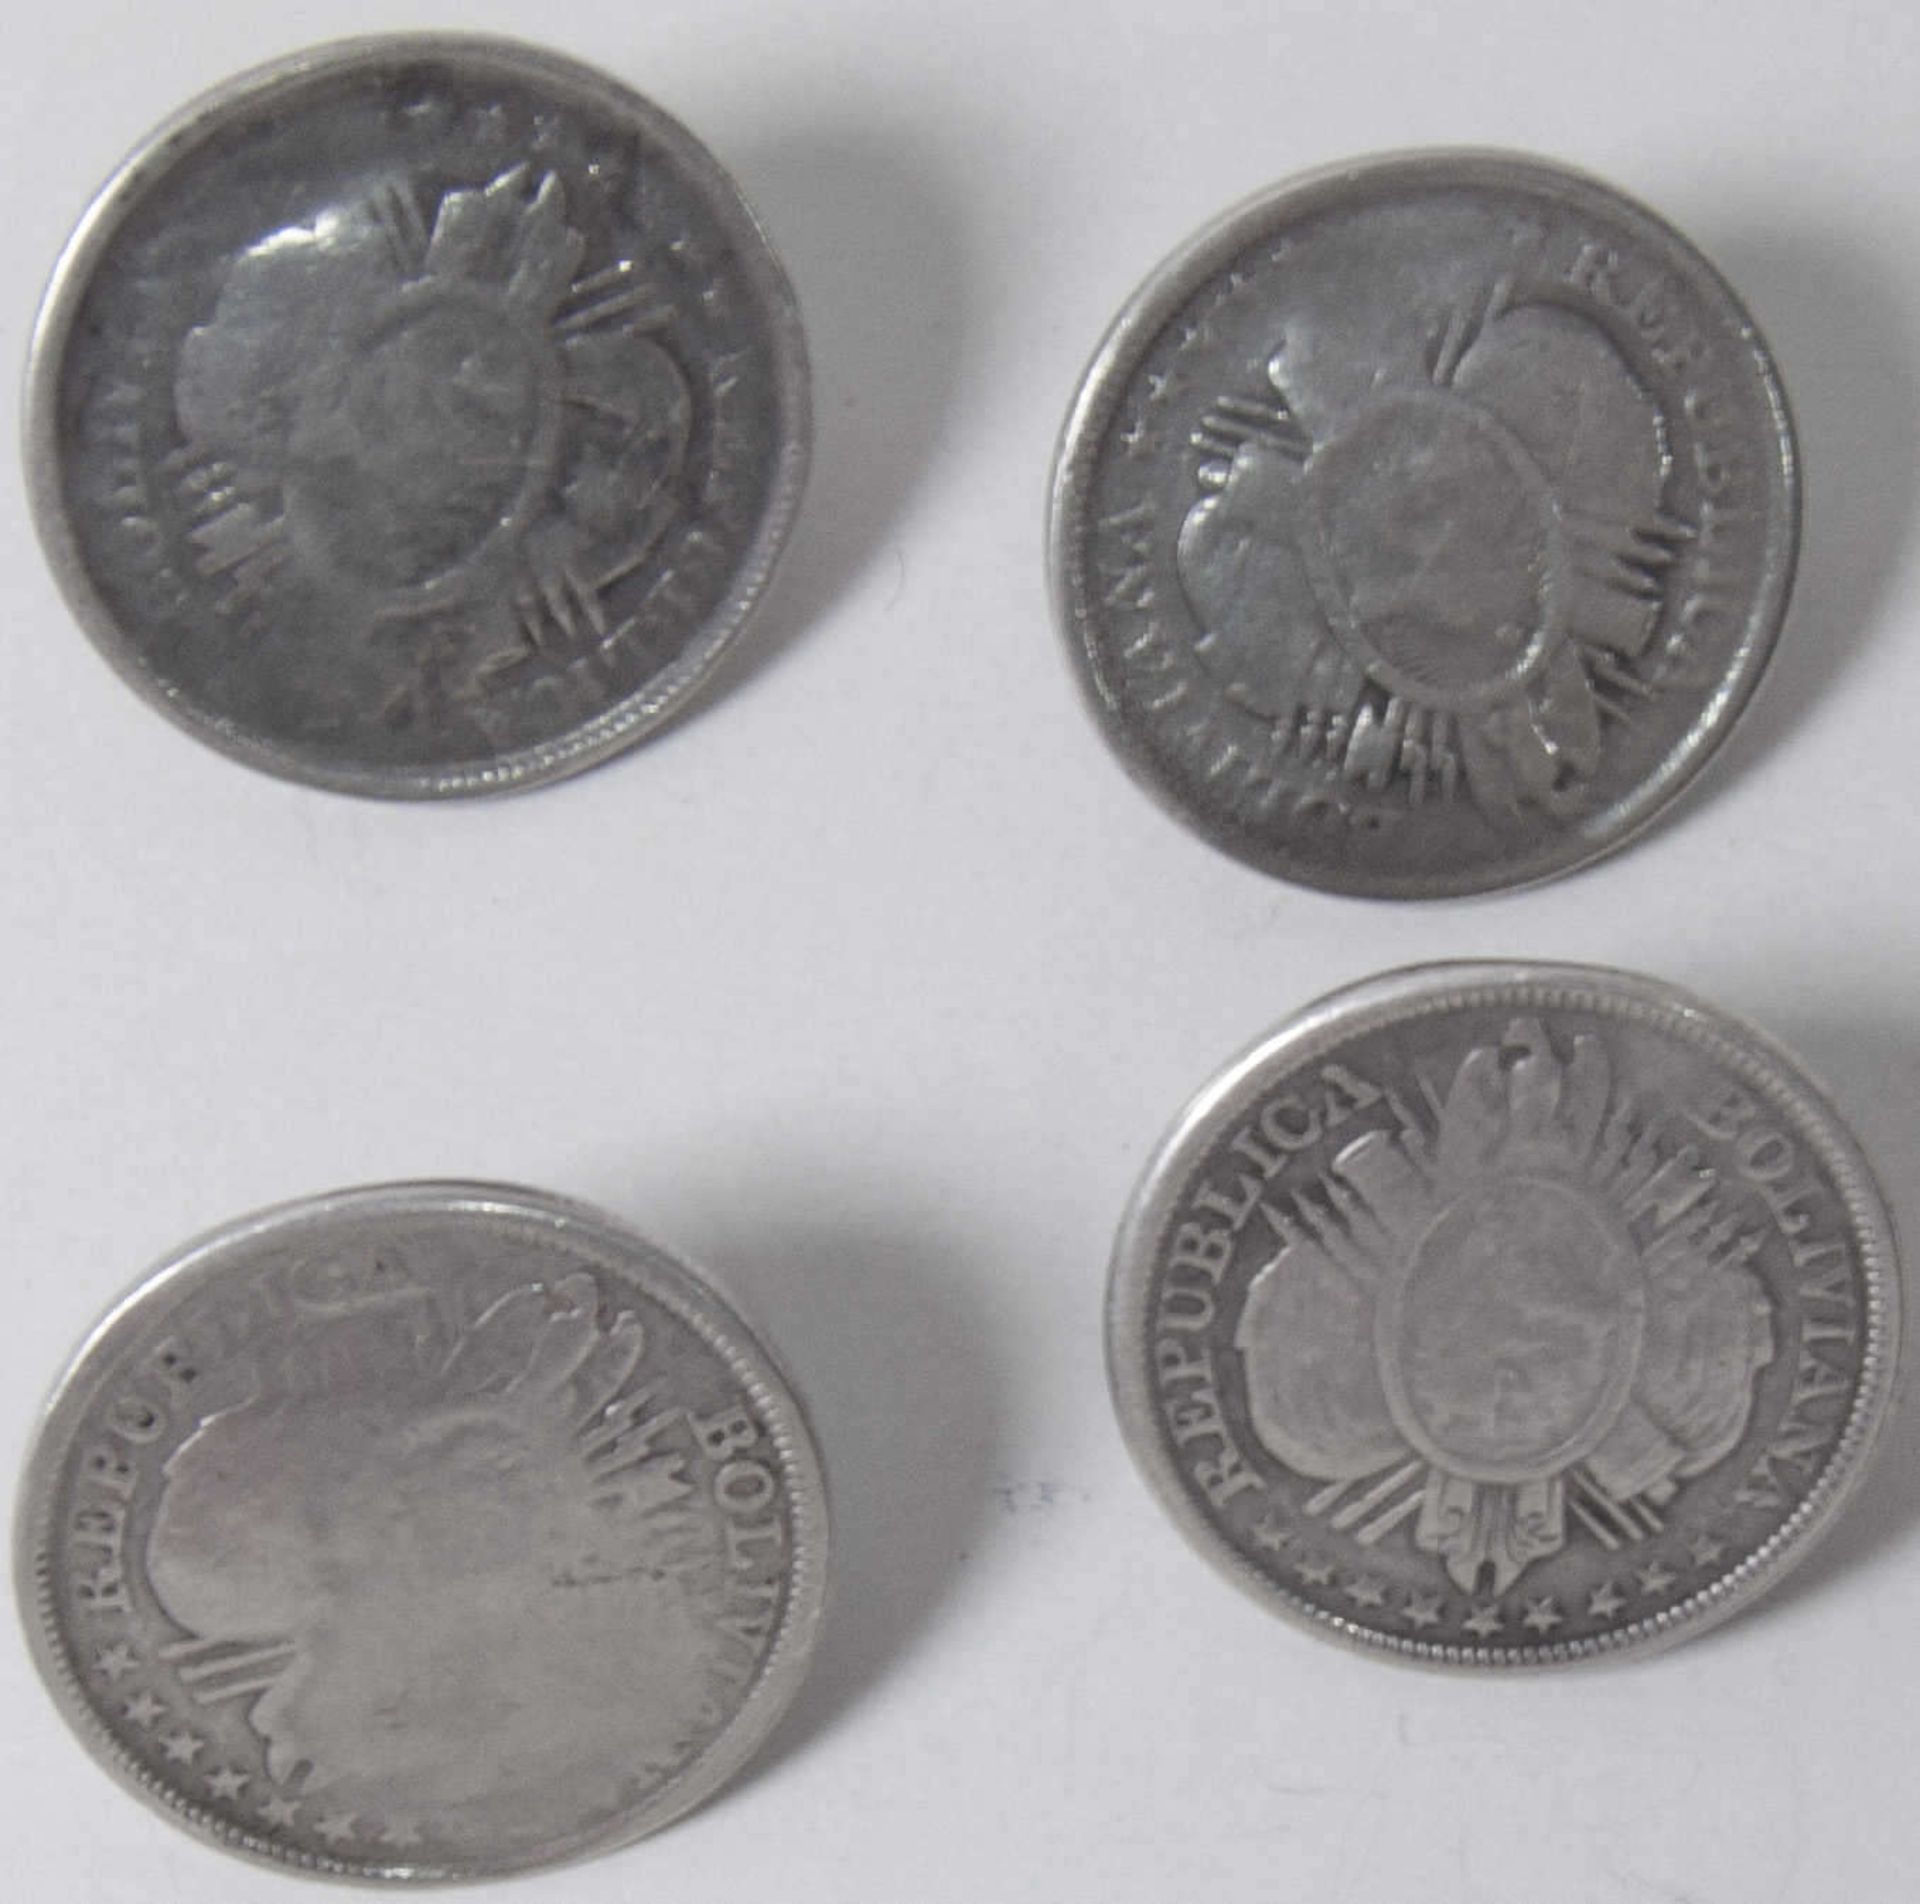 Bolivien 1892 - 1900, Uniform - Knöpfe aus 1/2 Boliviano - Münzen. Silber 900. Gesamtgewicht: ca.